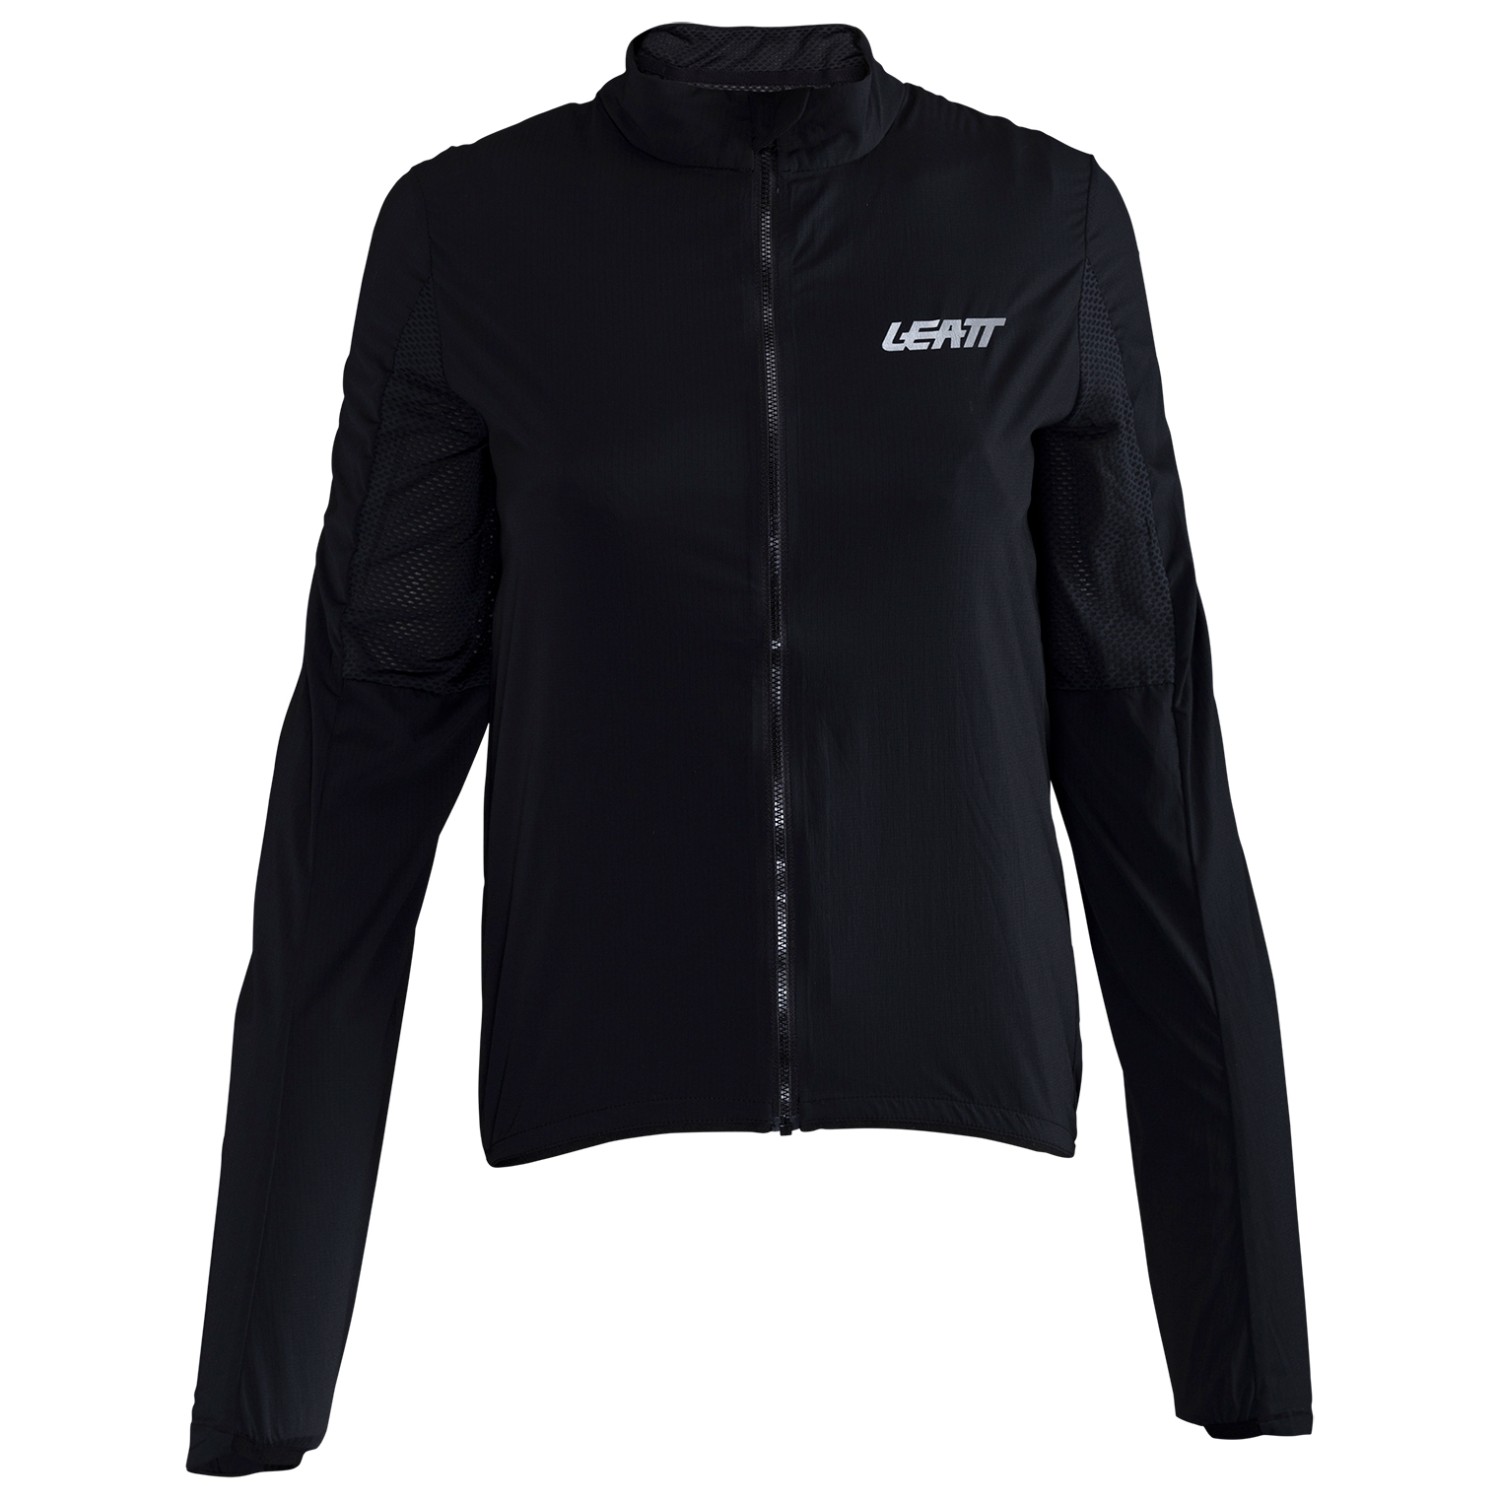 Велосипедная куртка Leatt Women's MTB Endurance 2 0, черный